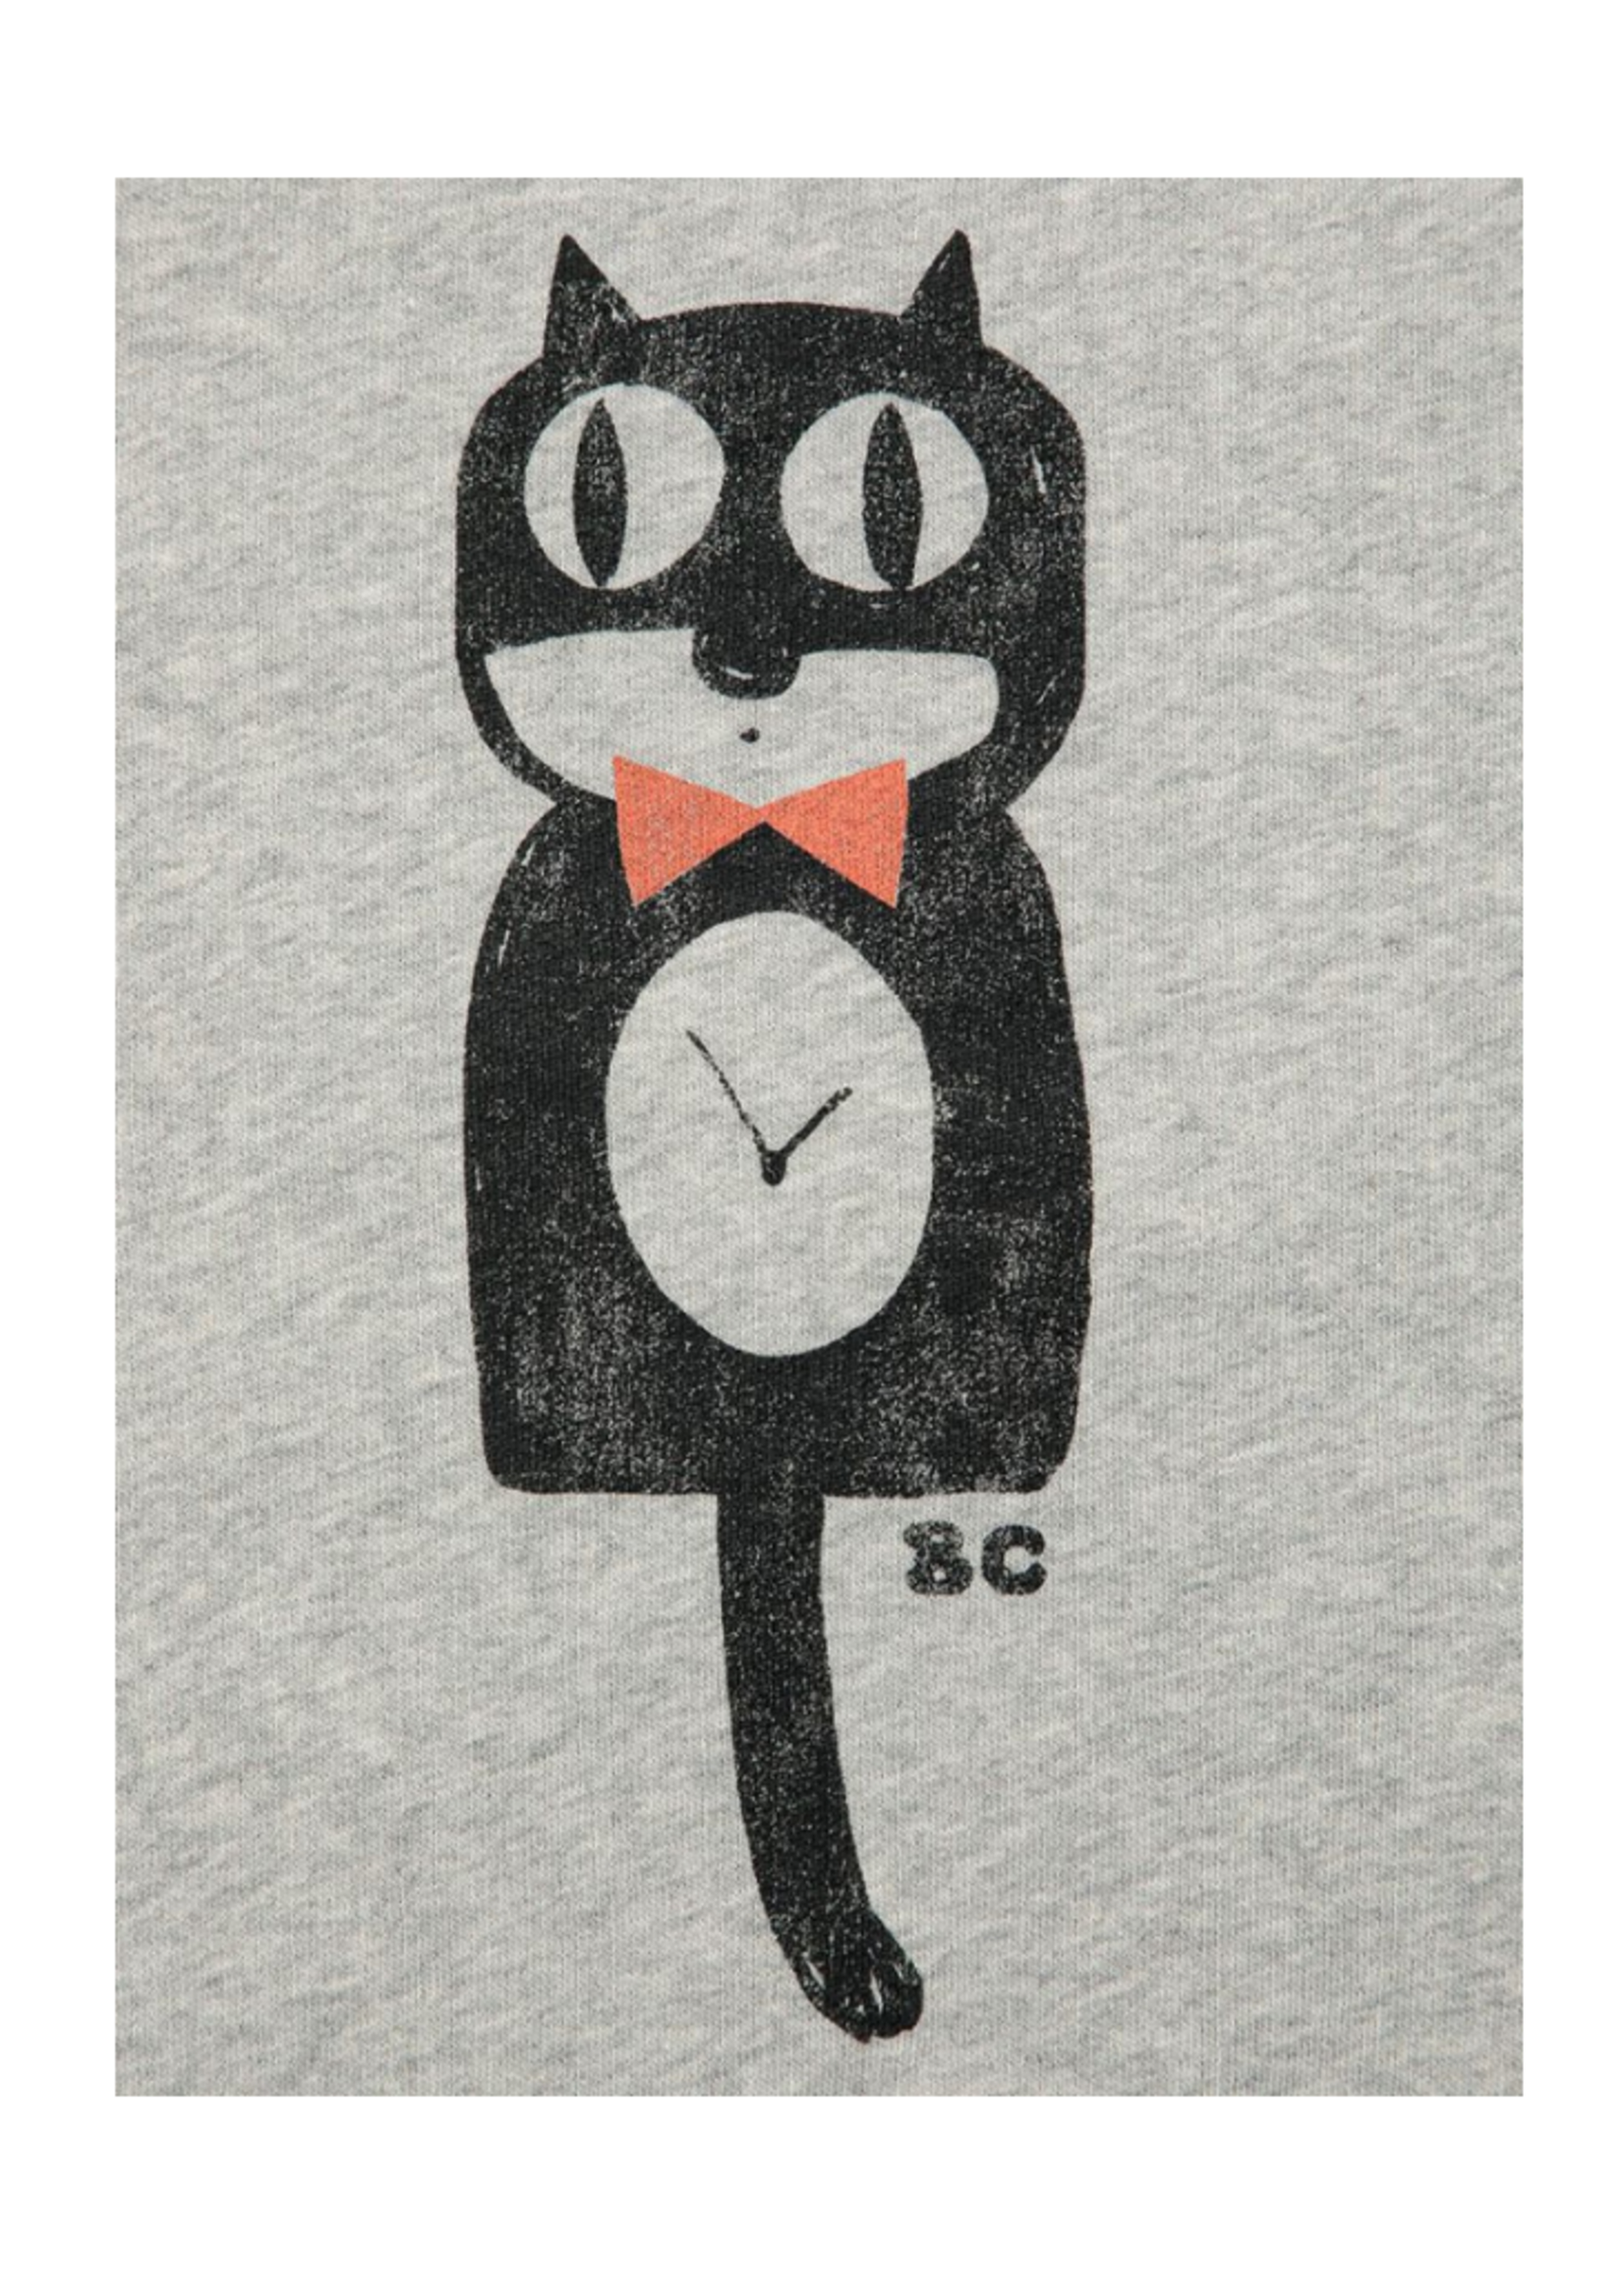 Bobo Choses Cat O'Clock Sweatshirt